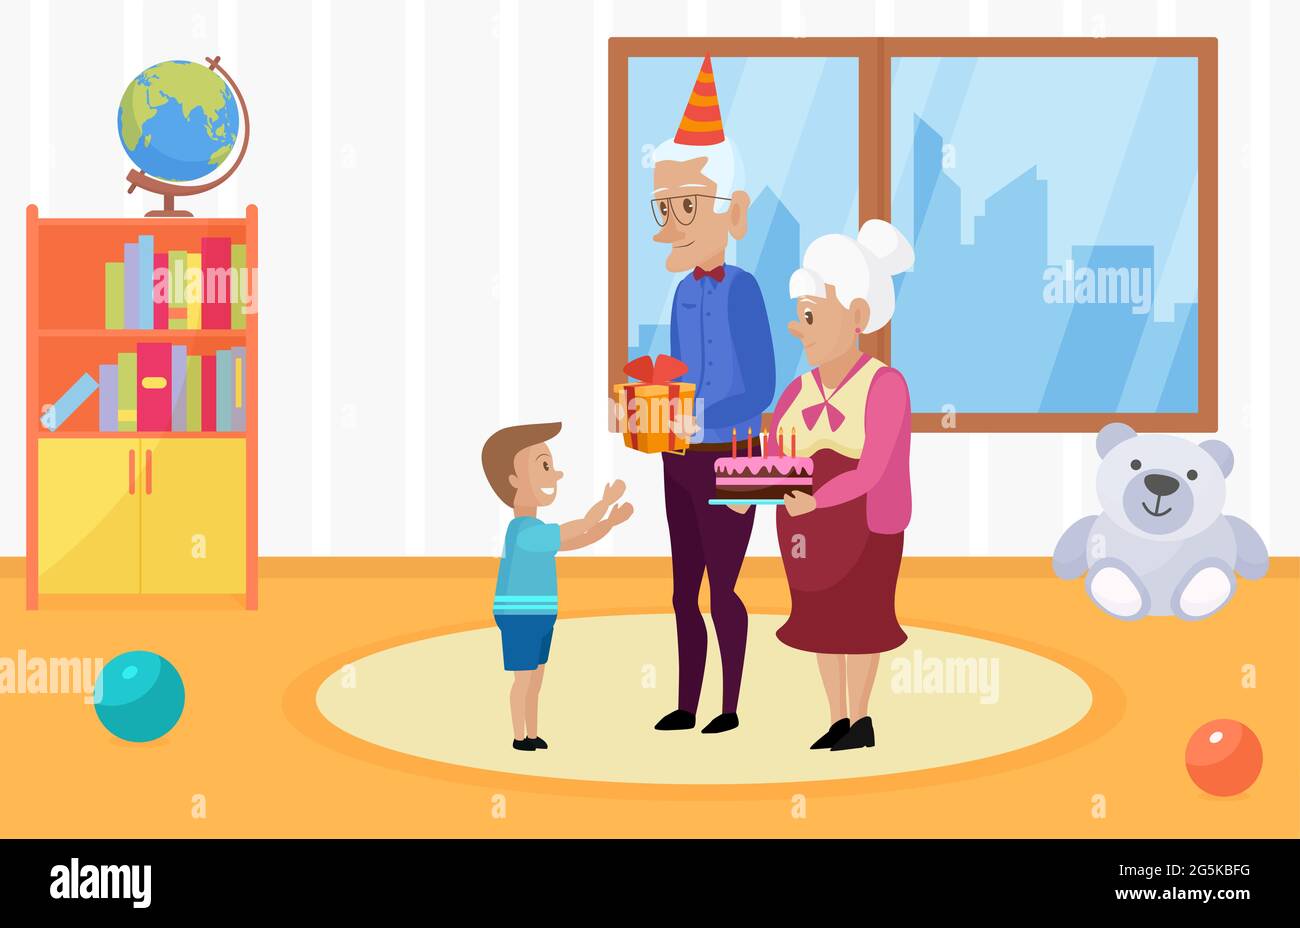 Happy Family feiert Kinder Happy Birthday Vektor Illustration. Cartoon Großmutter Großvater Figuren halten Kuchen mit Kerzen, Geschenk zu Jungen Kind im Kindergarten inneren Hintergrund gratulieren Stock Vektor